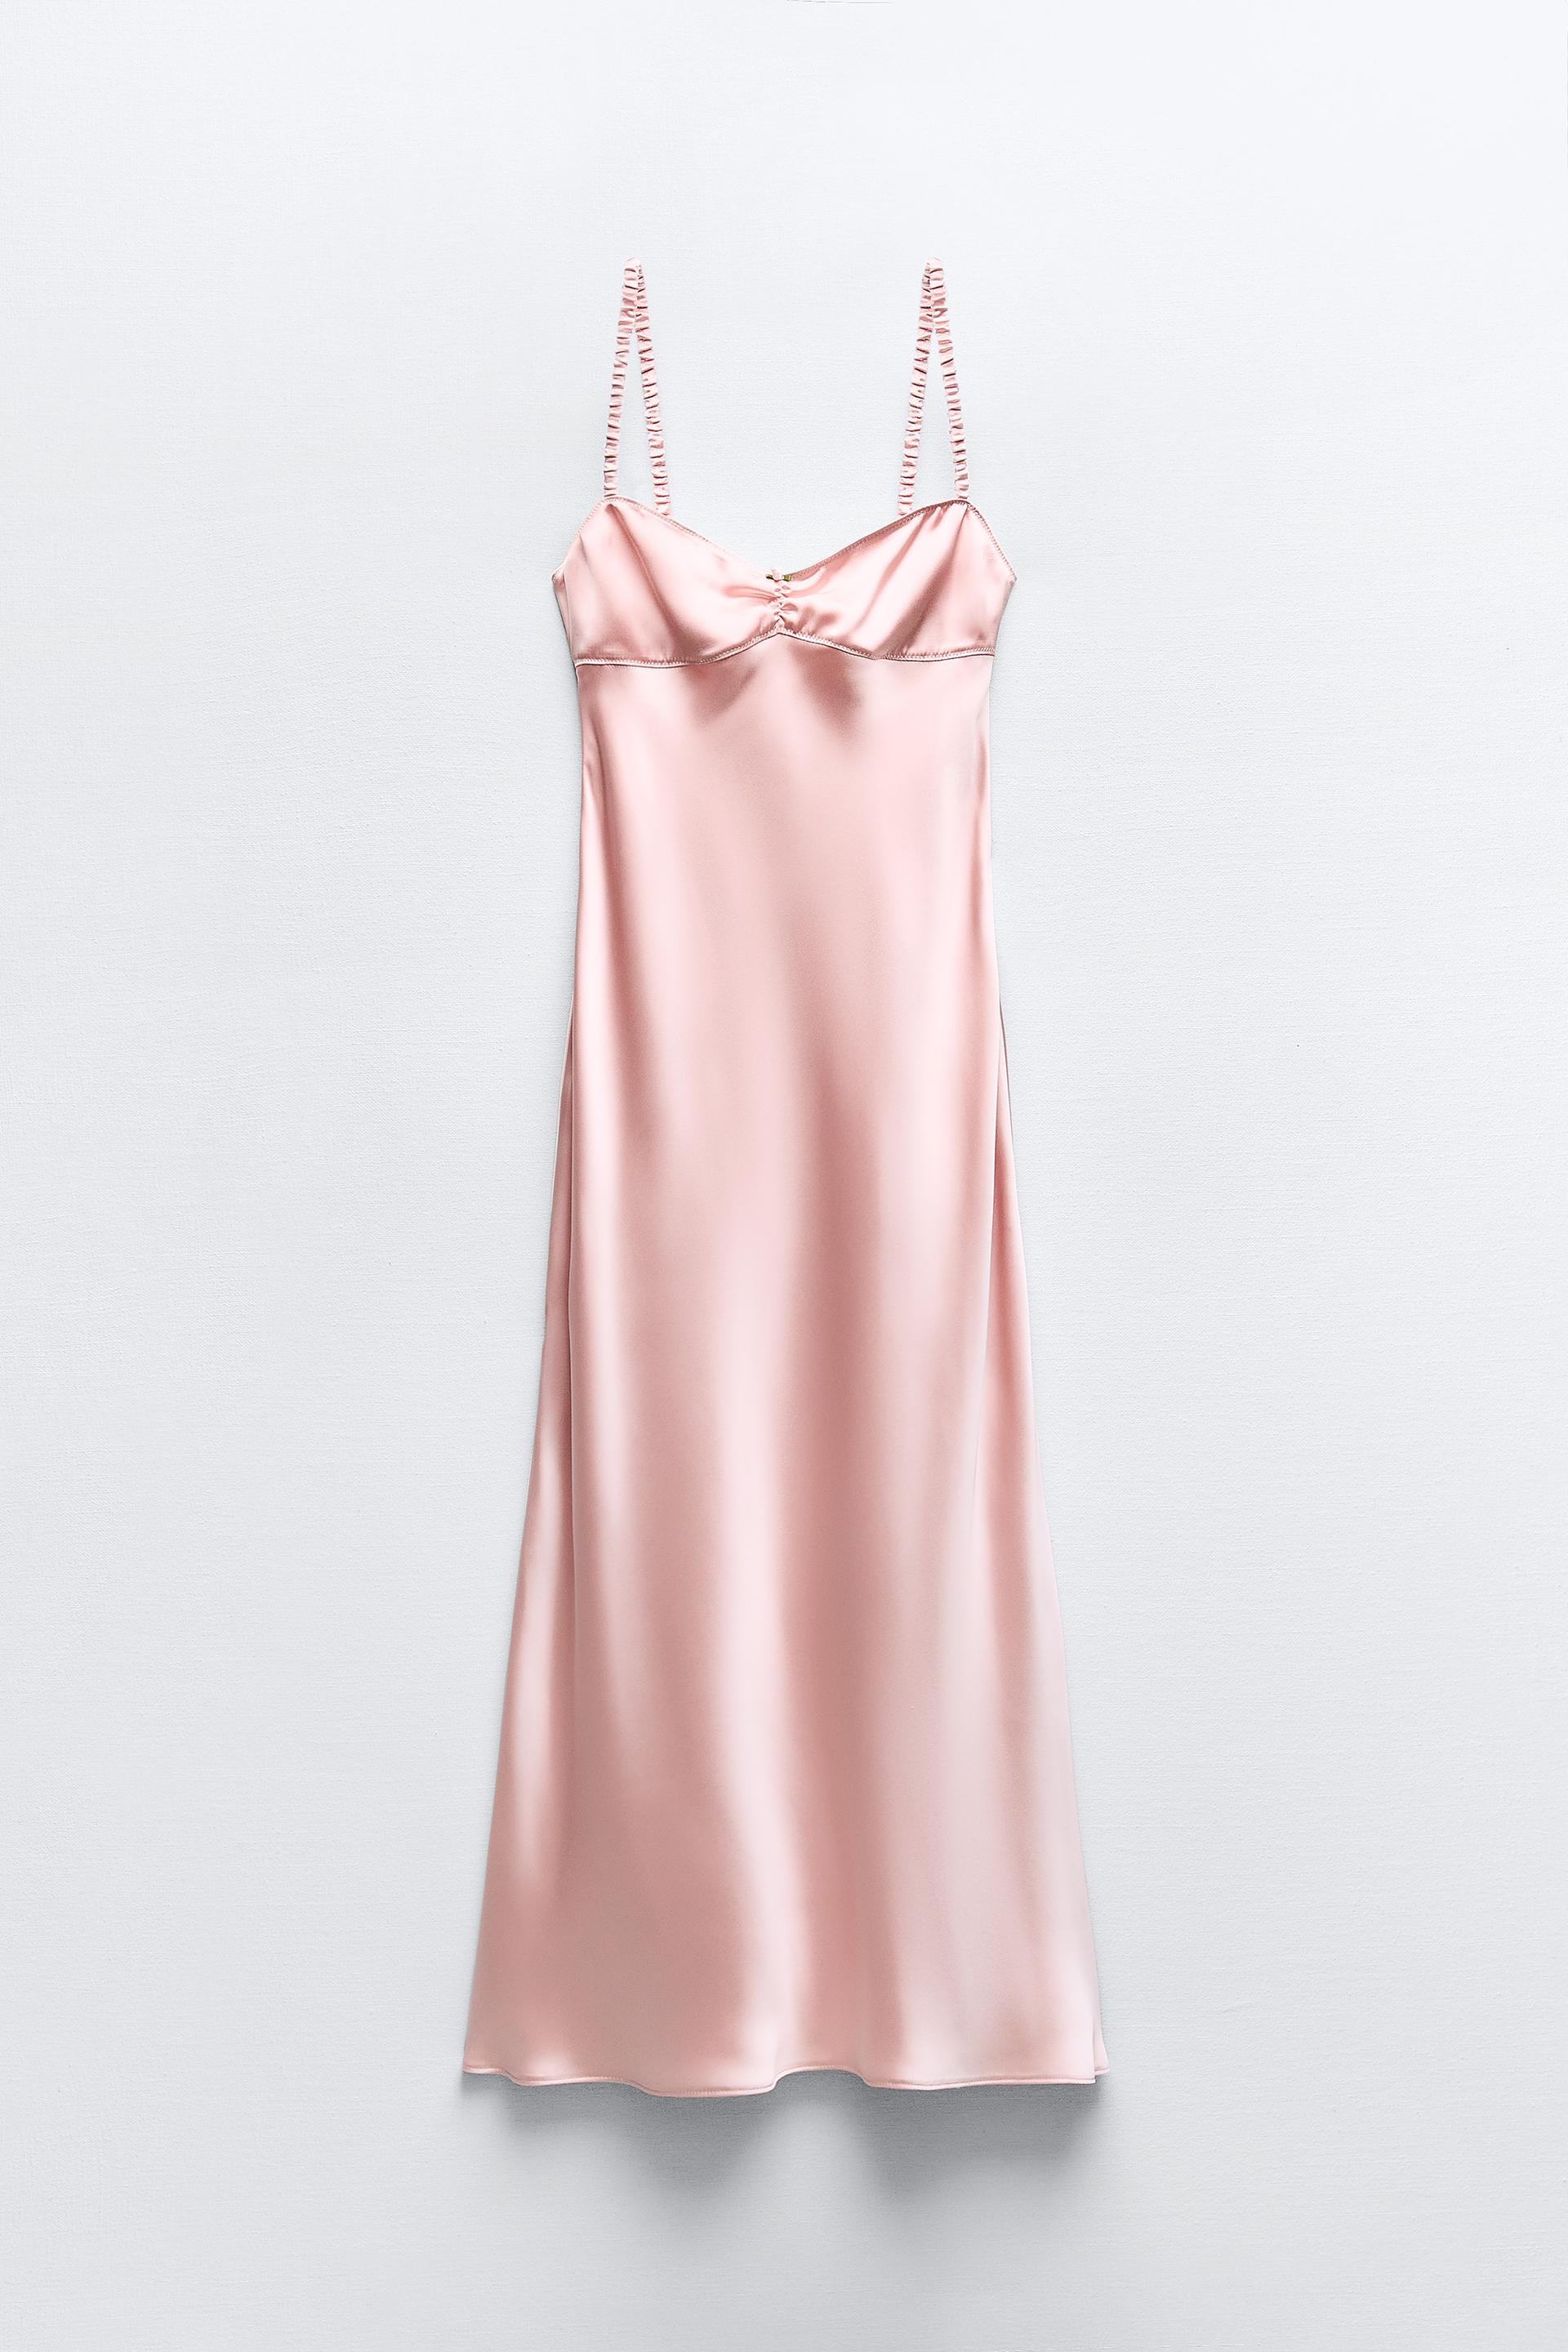 Zara Silk Dress Limited Edition XS/S NWT